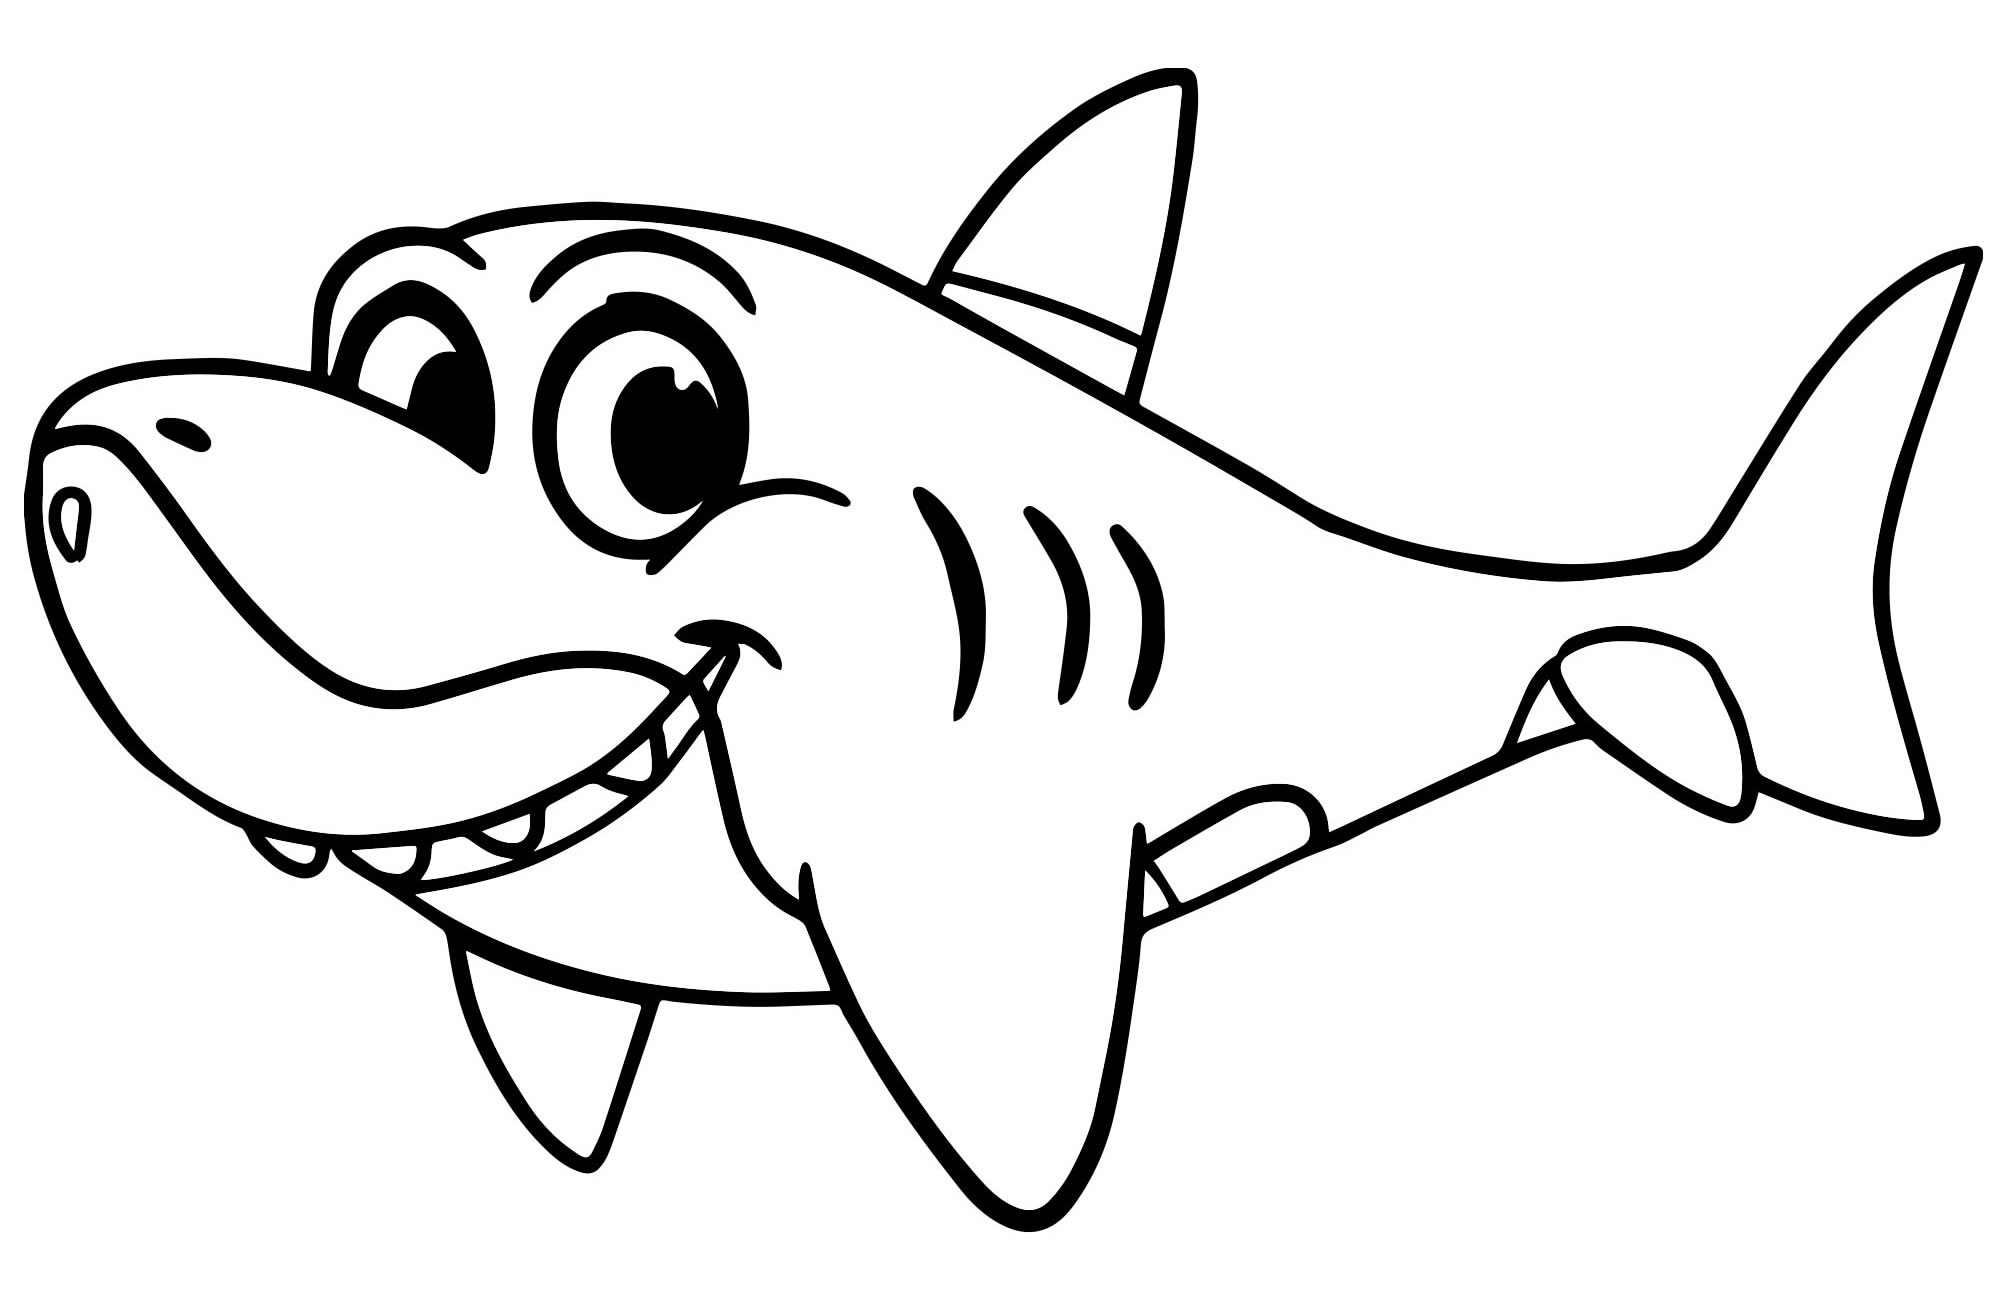 Раскраски акул. Раскраски морских животных и рыб. Раскраска акулы